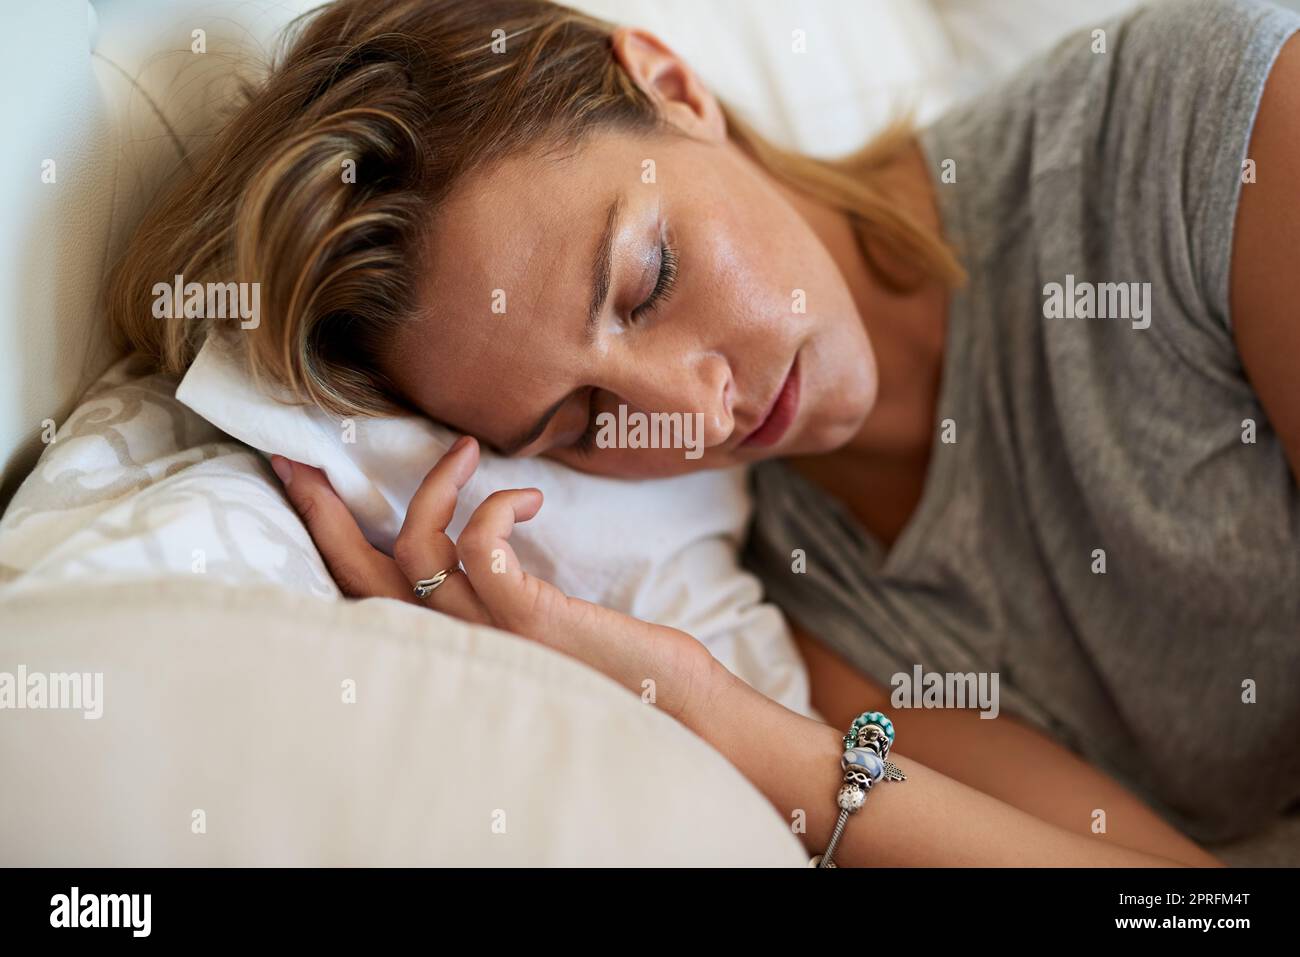 Dormez paisiblement, réveillez-vous avec plaisir. Gros plan d'une femme attrayante dormant sur le côté dans le lit à la maison. Banque D'Images